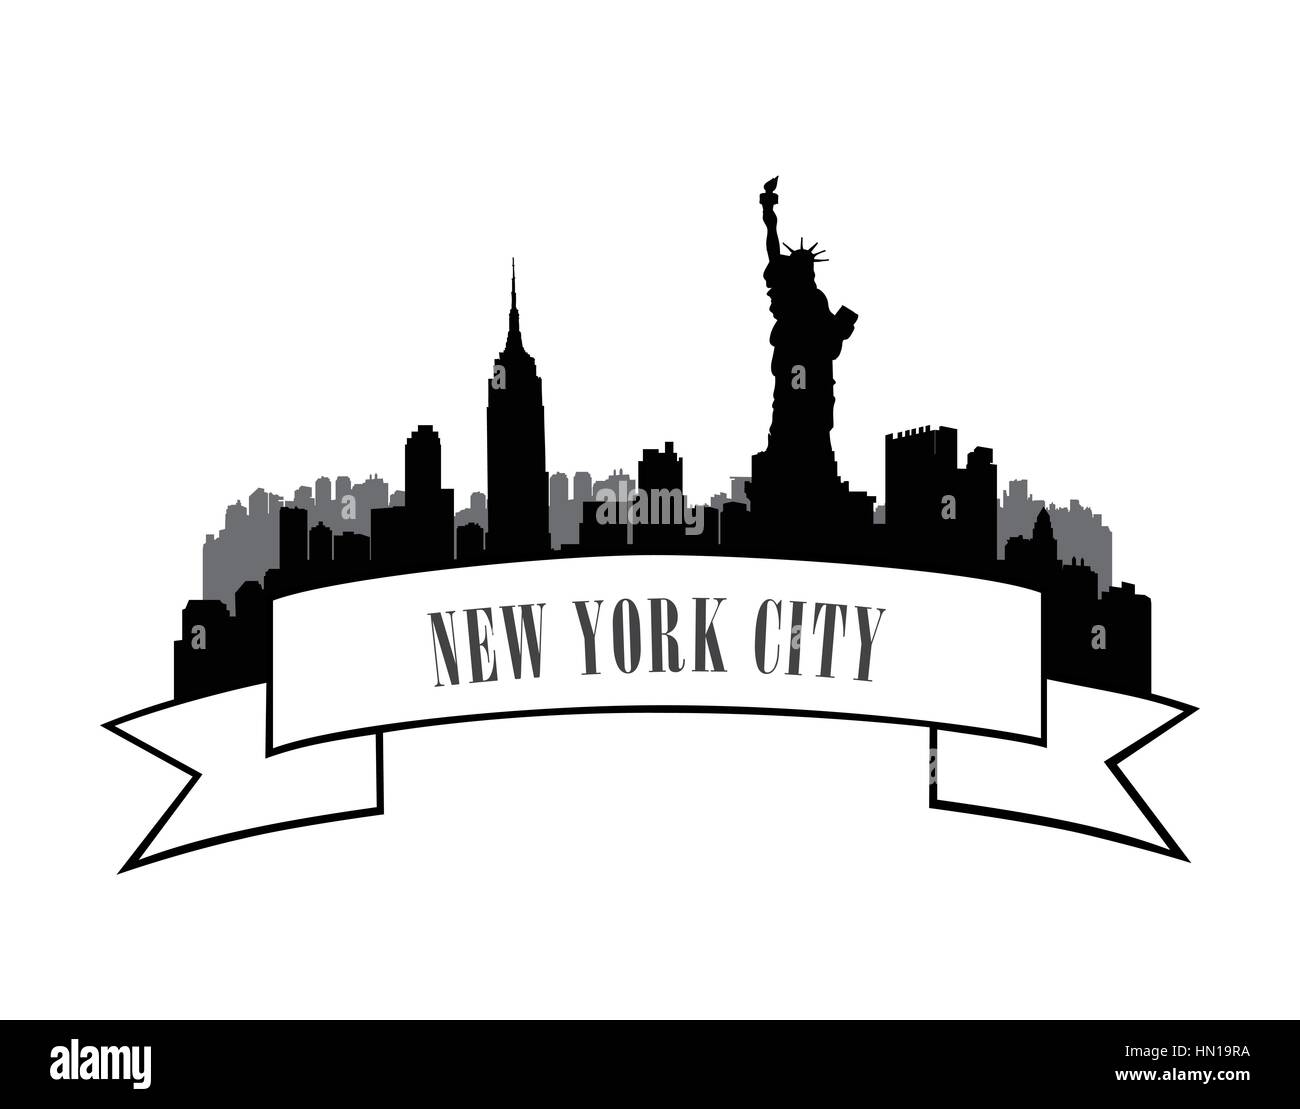 New york, Stati Uniti d'America skyline sketch. New York City con silhouette monumento liberty city silhouette skyline. panorama emblema della città. skyline etichetta urbana Illustrazione Vettoriale